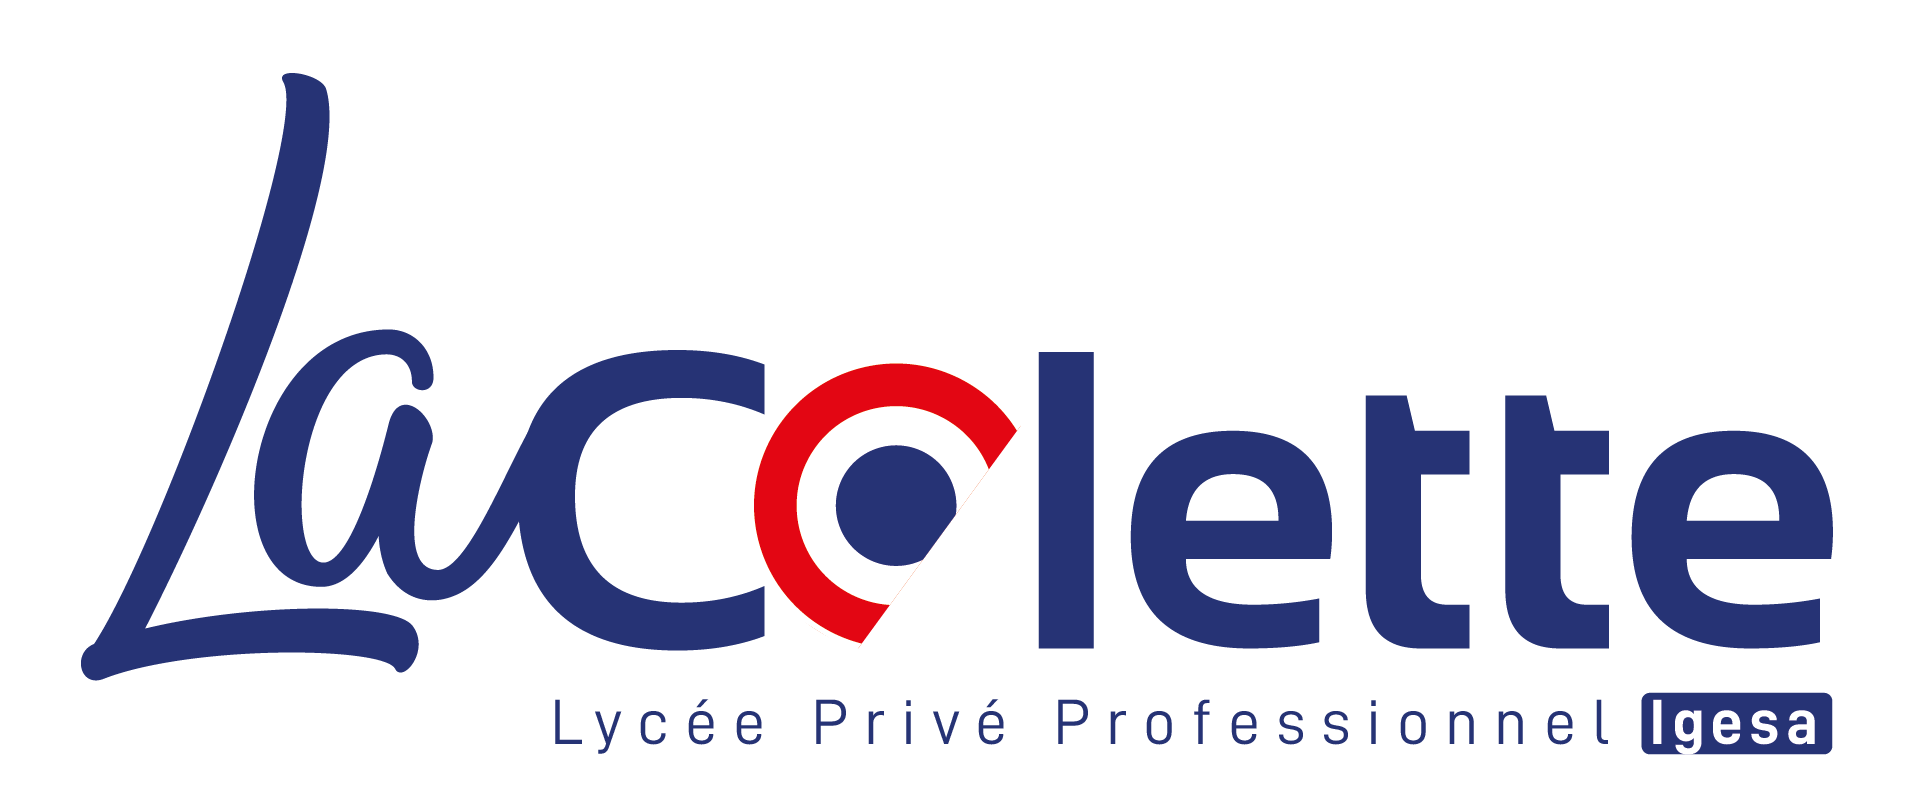 Lycée La Colette